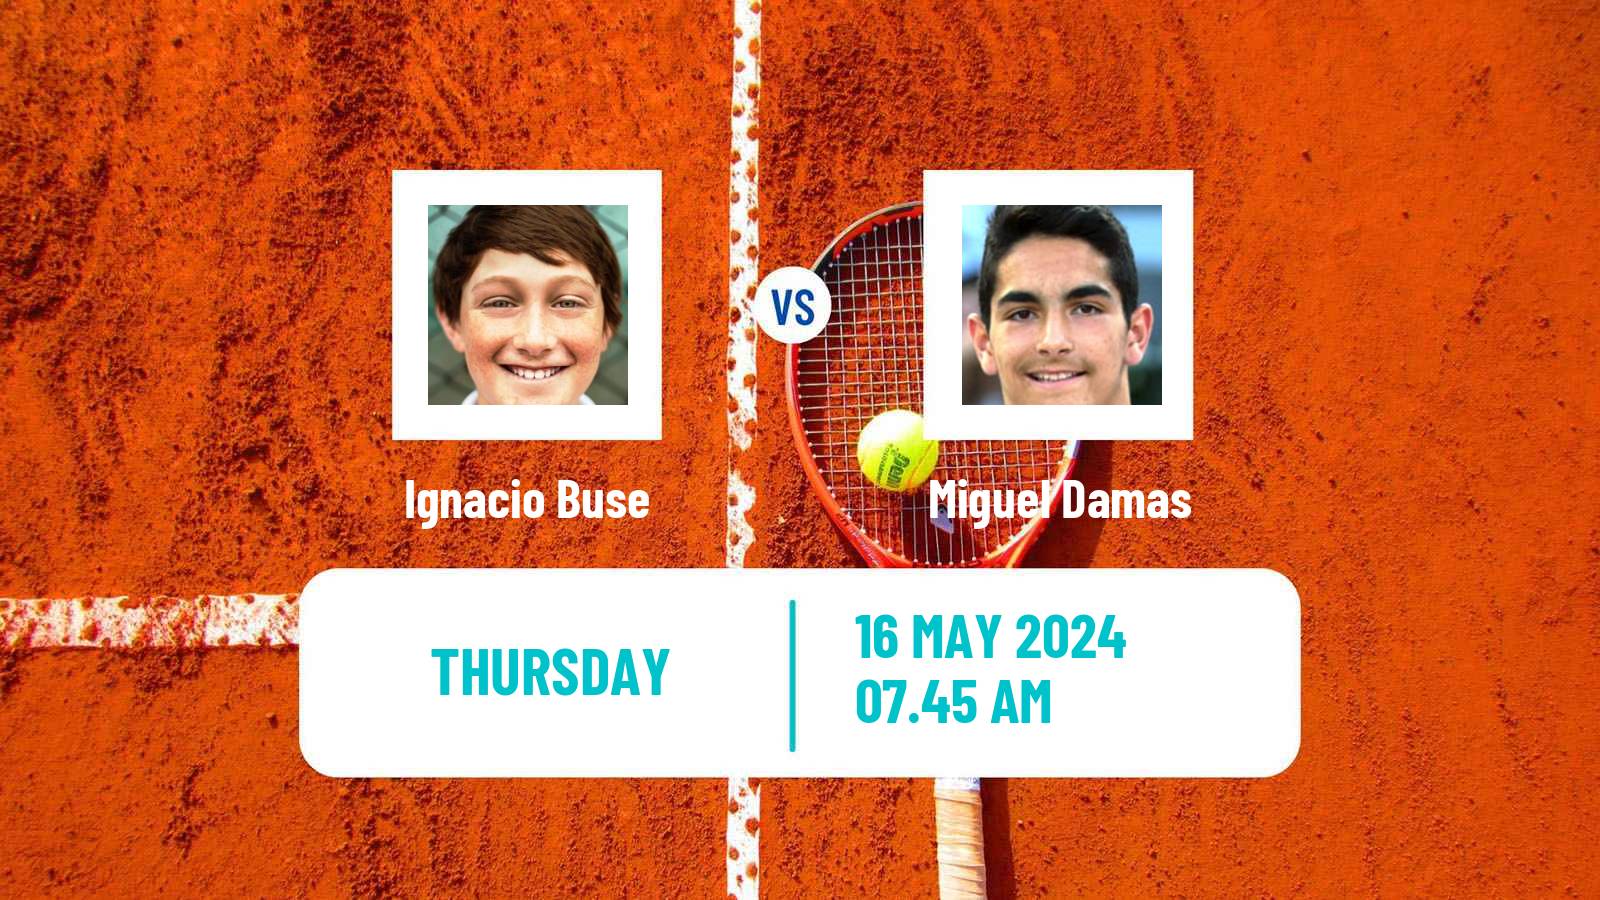 Tennis ITF M25 Vic Men Ignacio Buse - Miguel Damas